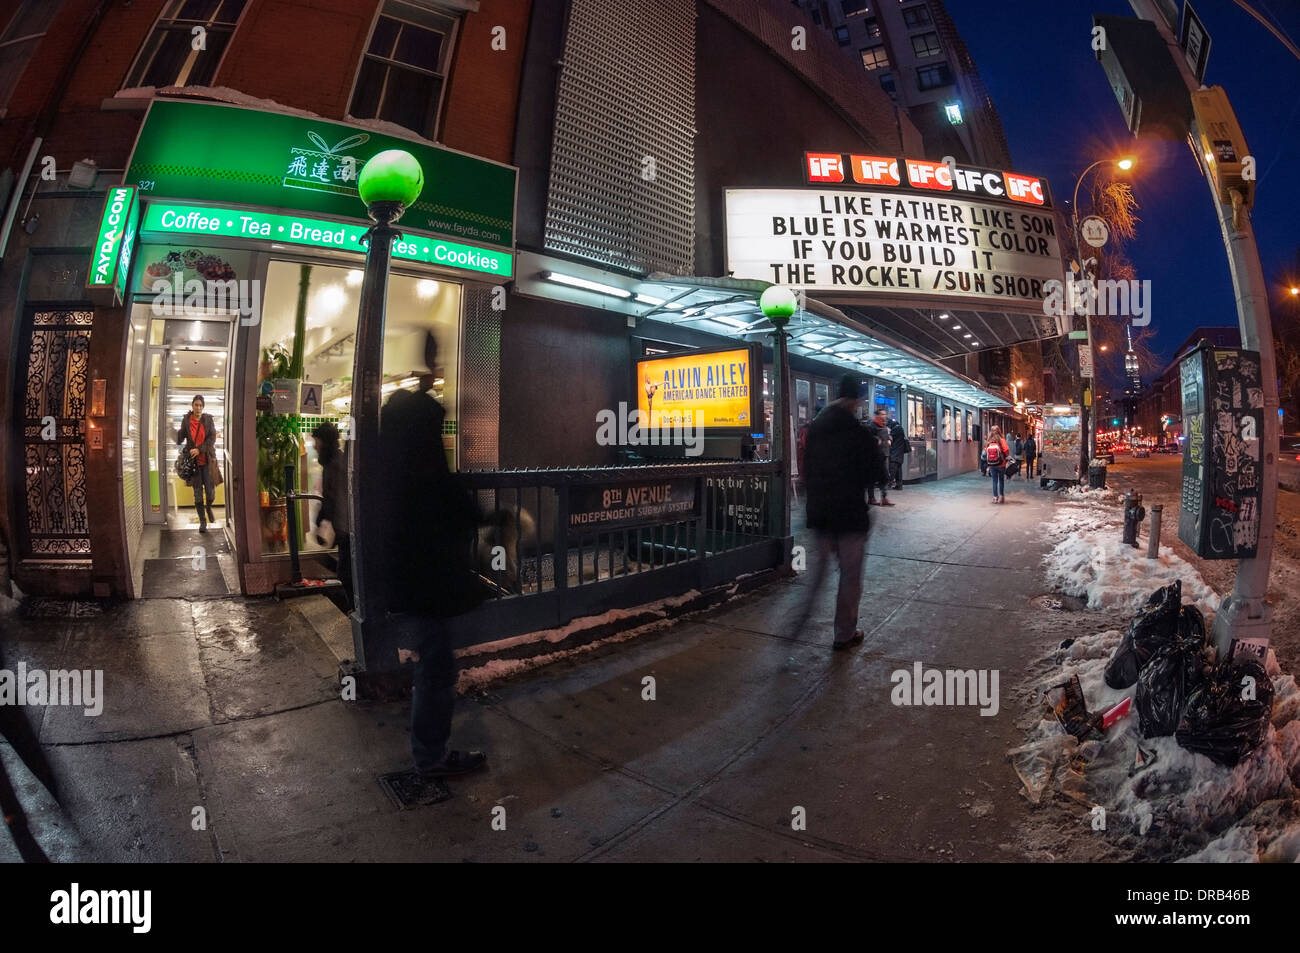 New York, NY 22 January 2013 - Sixth Avenue on a cold winter night. Stock Photo